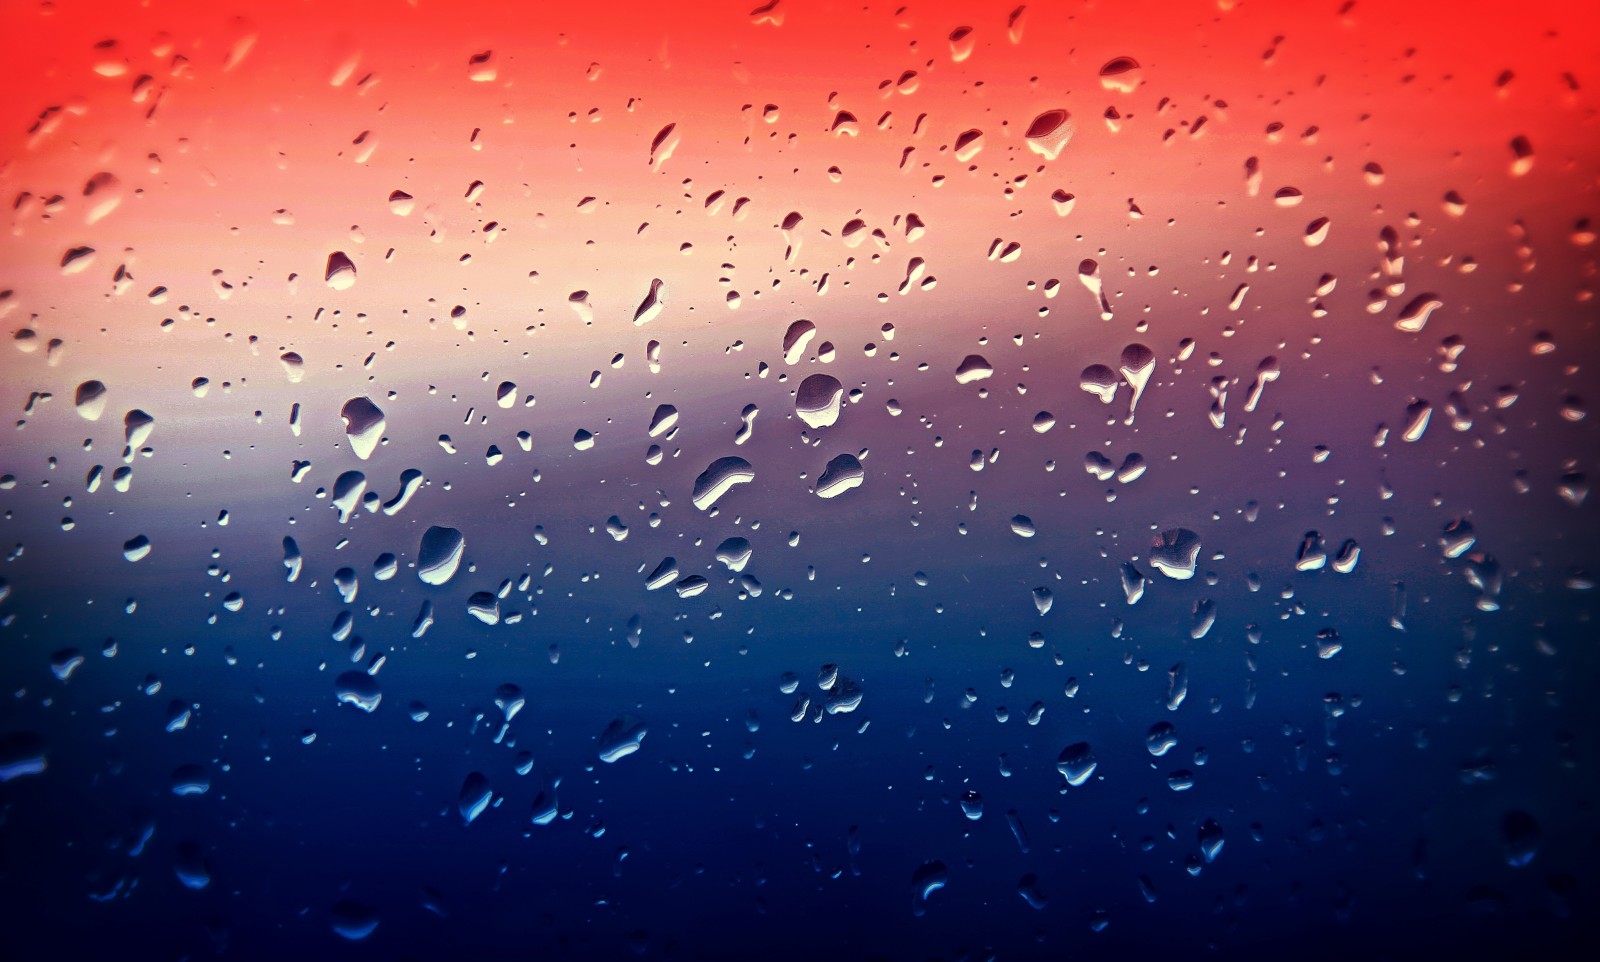 玻璃, 照片, 雨, 掉落, 颜色, 摄影家, 亚历山德罗·迪·西科（Alessandro Di Cicco）